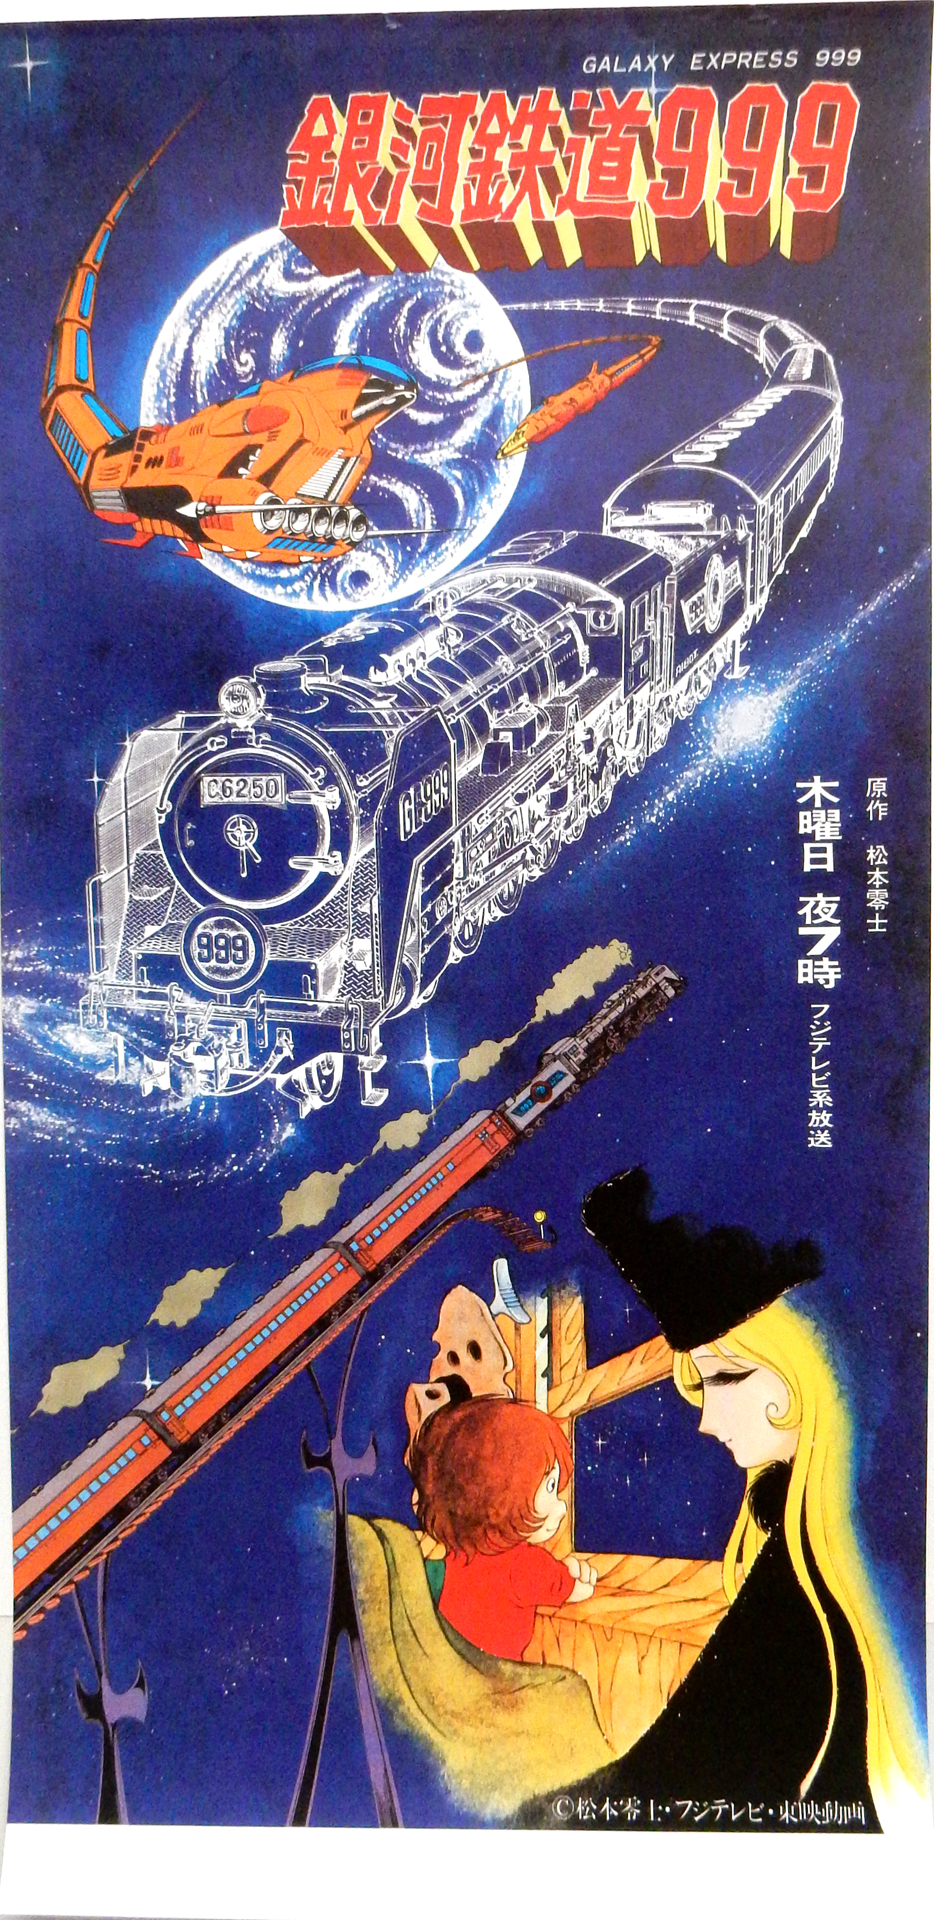 銀河鉄道999 両面のポスター